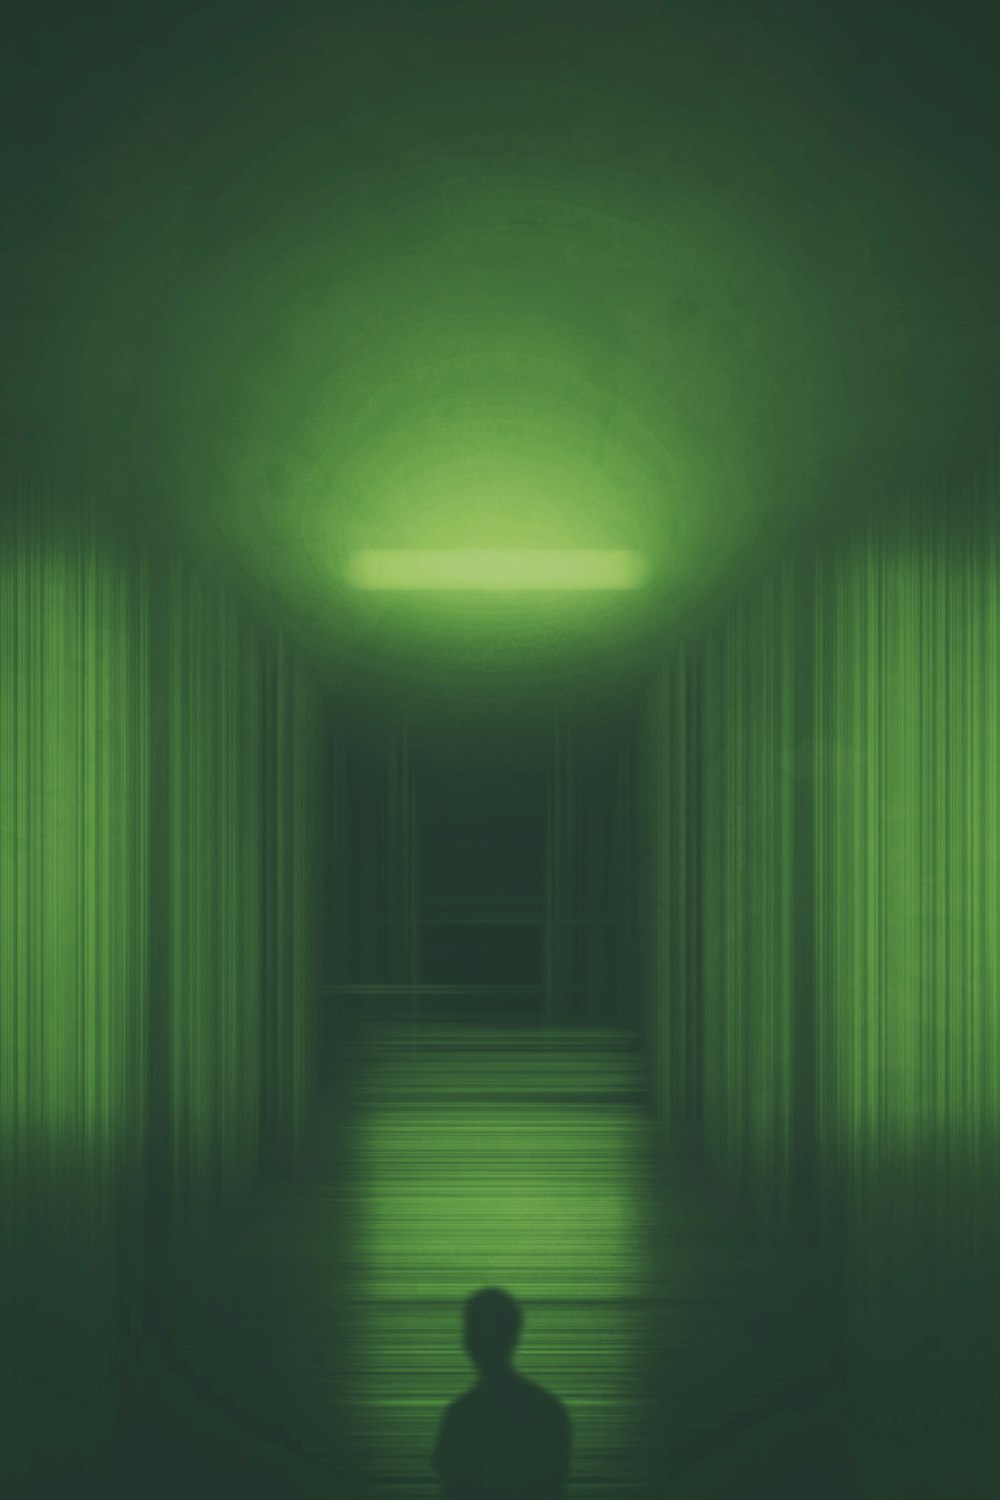 Una persona parada en una habitación oscura con una luz verde